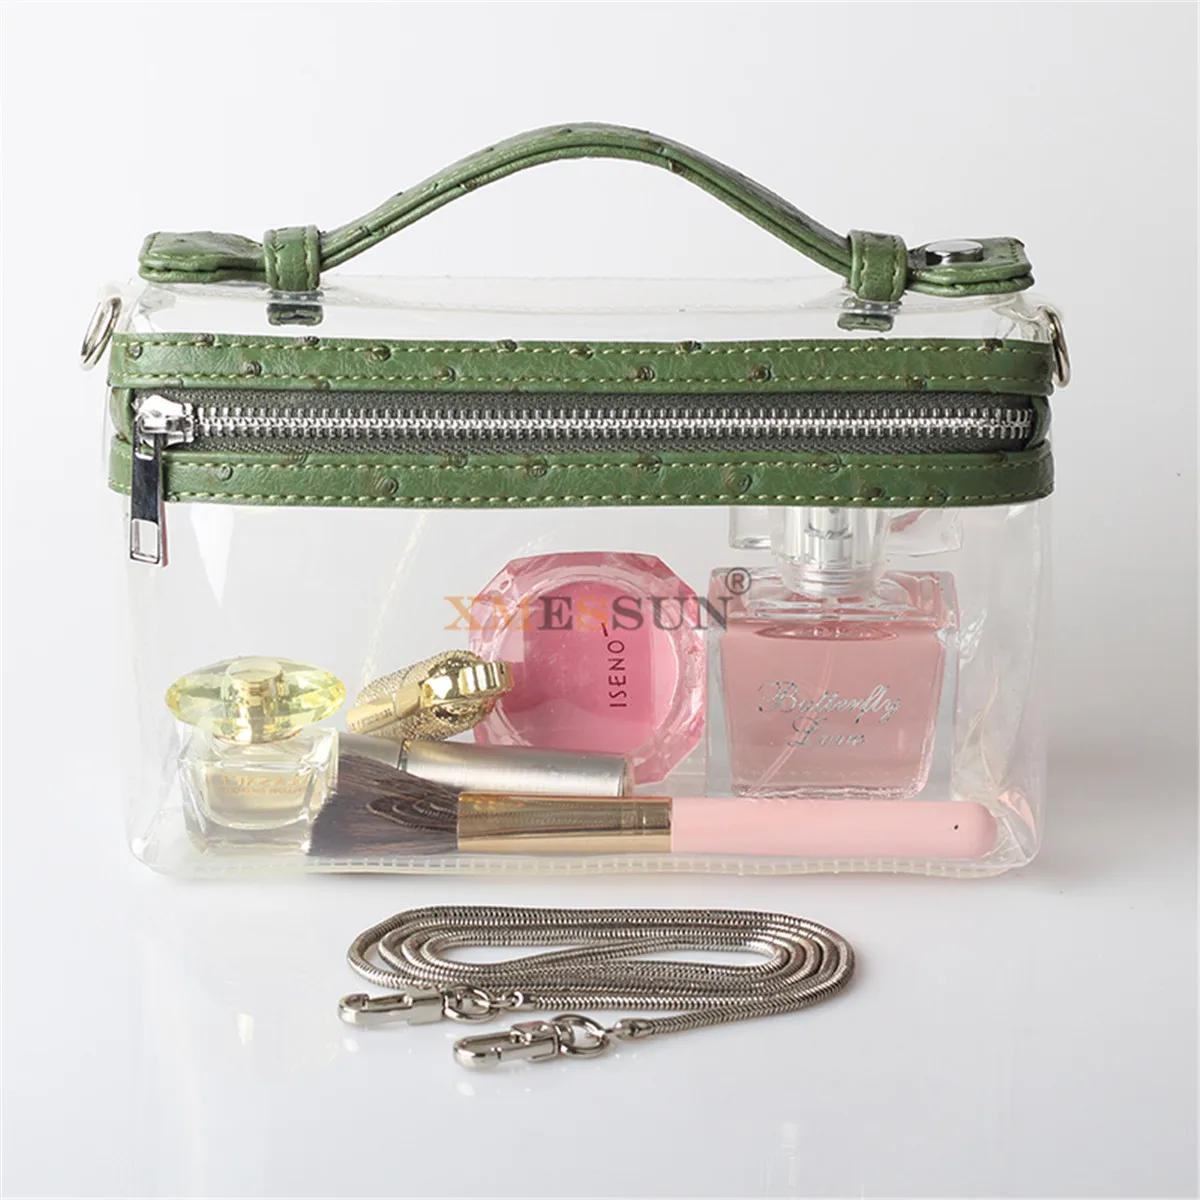 XMESSUN прозрачная сумка, прозрачная сумка через плечо, женская модная вечерняя сумочка для девушек, роскошная дизайнерская сумка, модная сумка - Цвет: Ostrich Green(5)